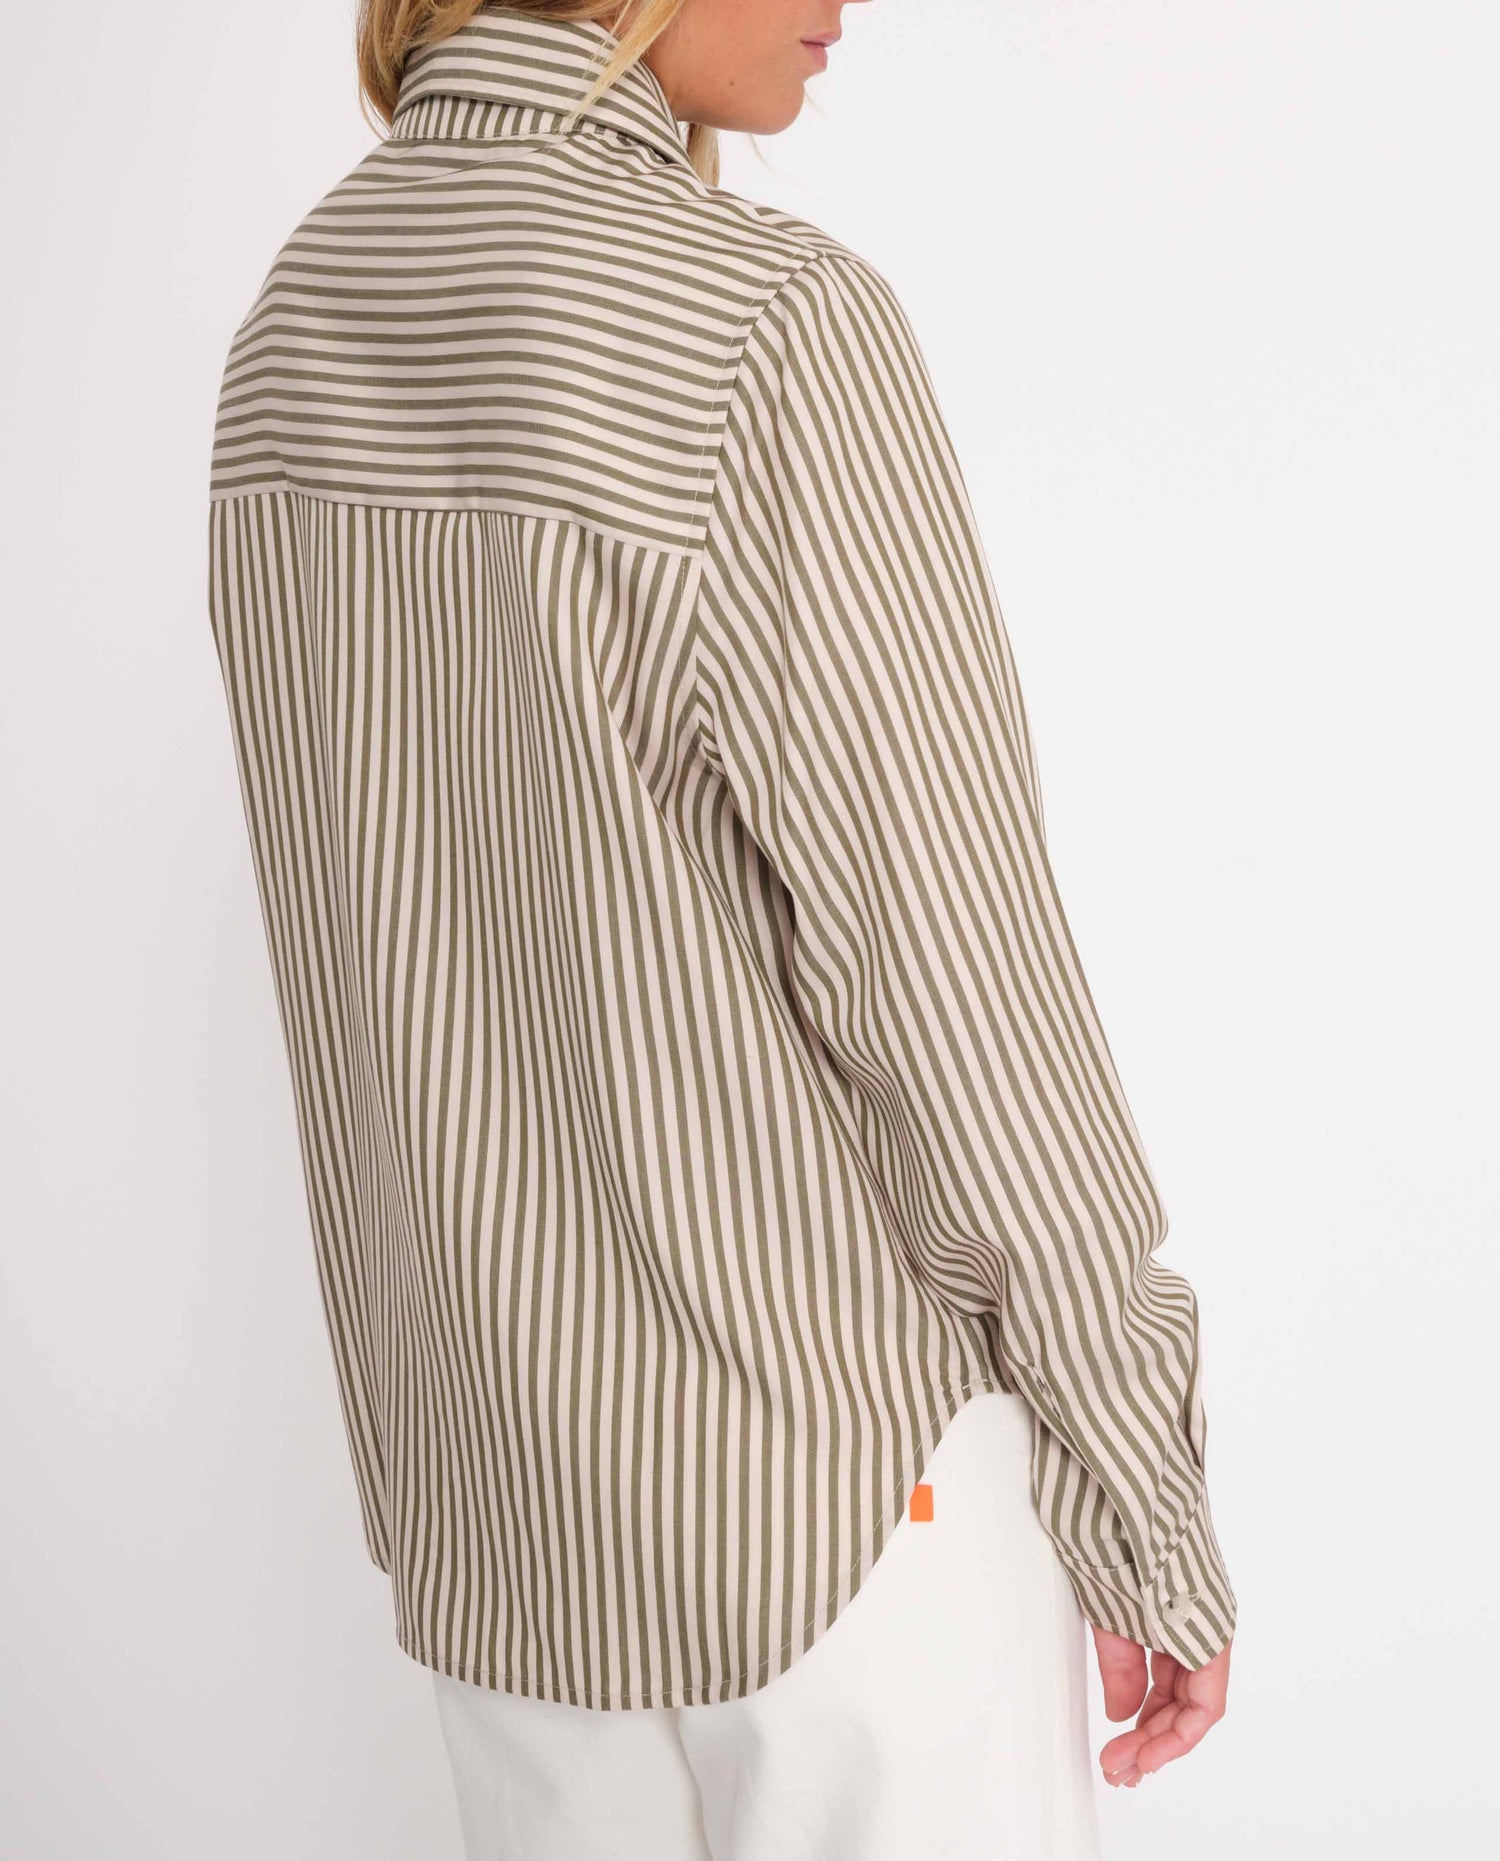 marché commun rotholz femme chemise col italien tencel rayures kaki sable